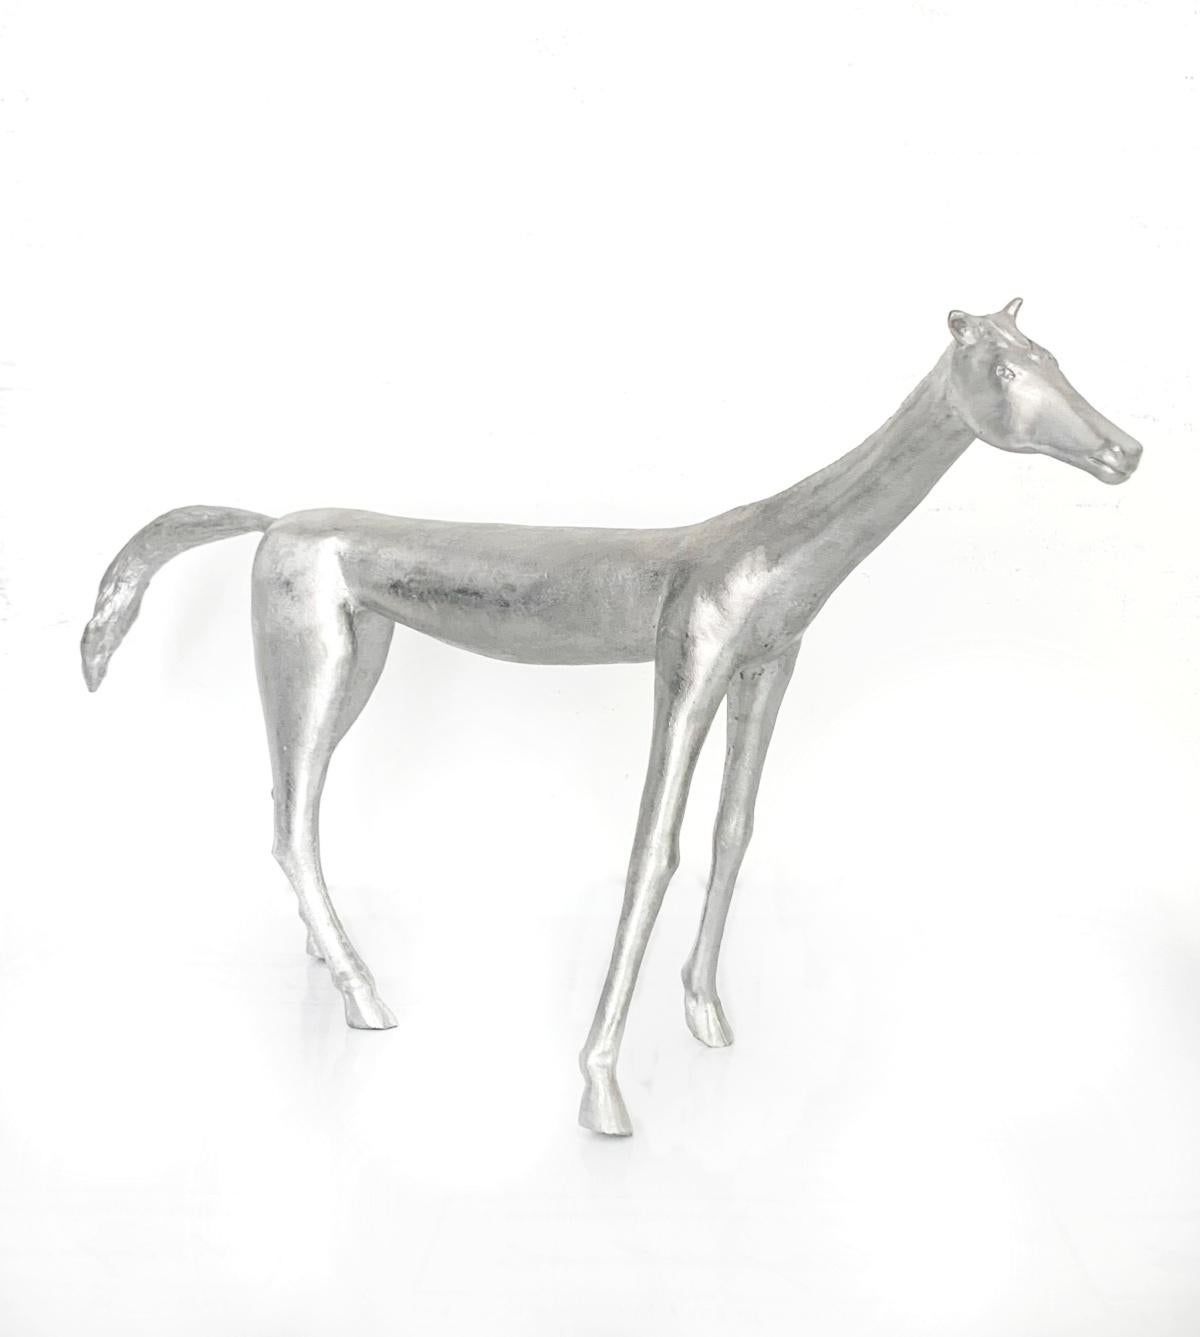 Antonio Giancaterino Figurative Sculpture - A horse. Contemporary aluminium sculpture, Animal, Italian artist